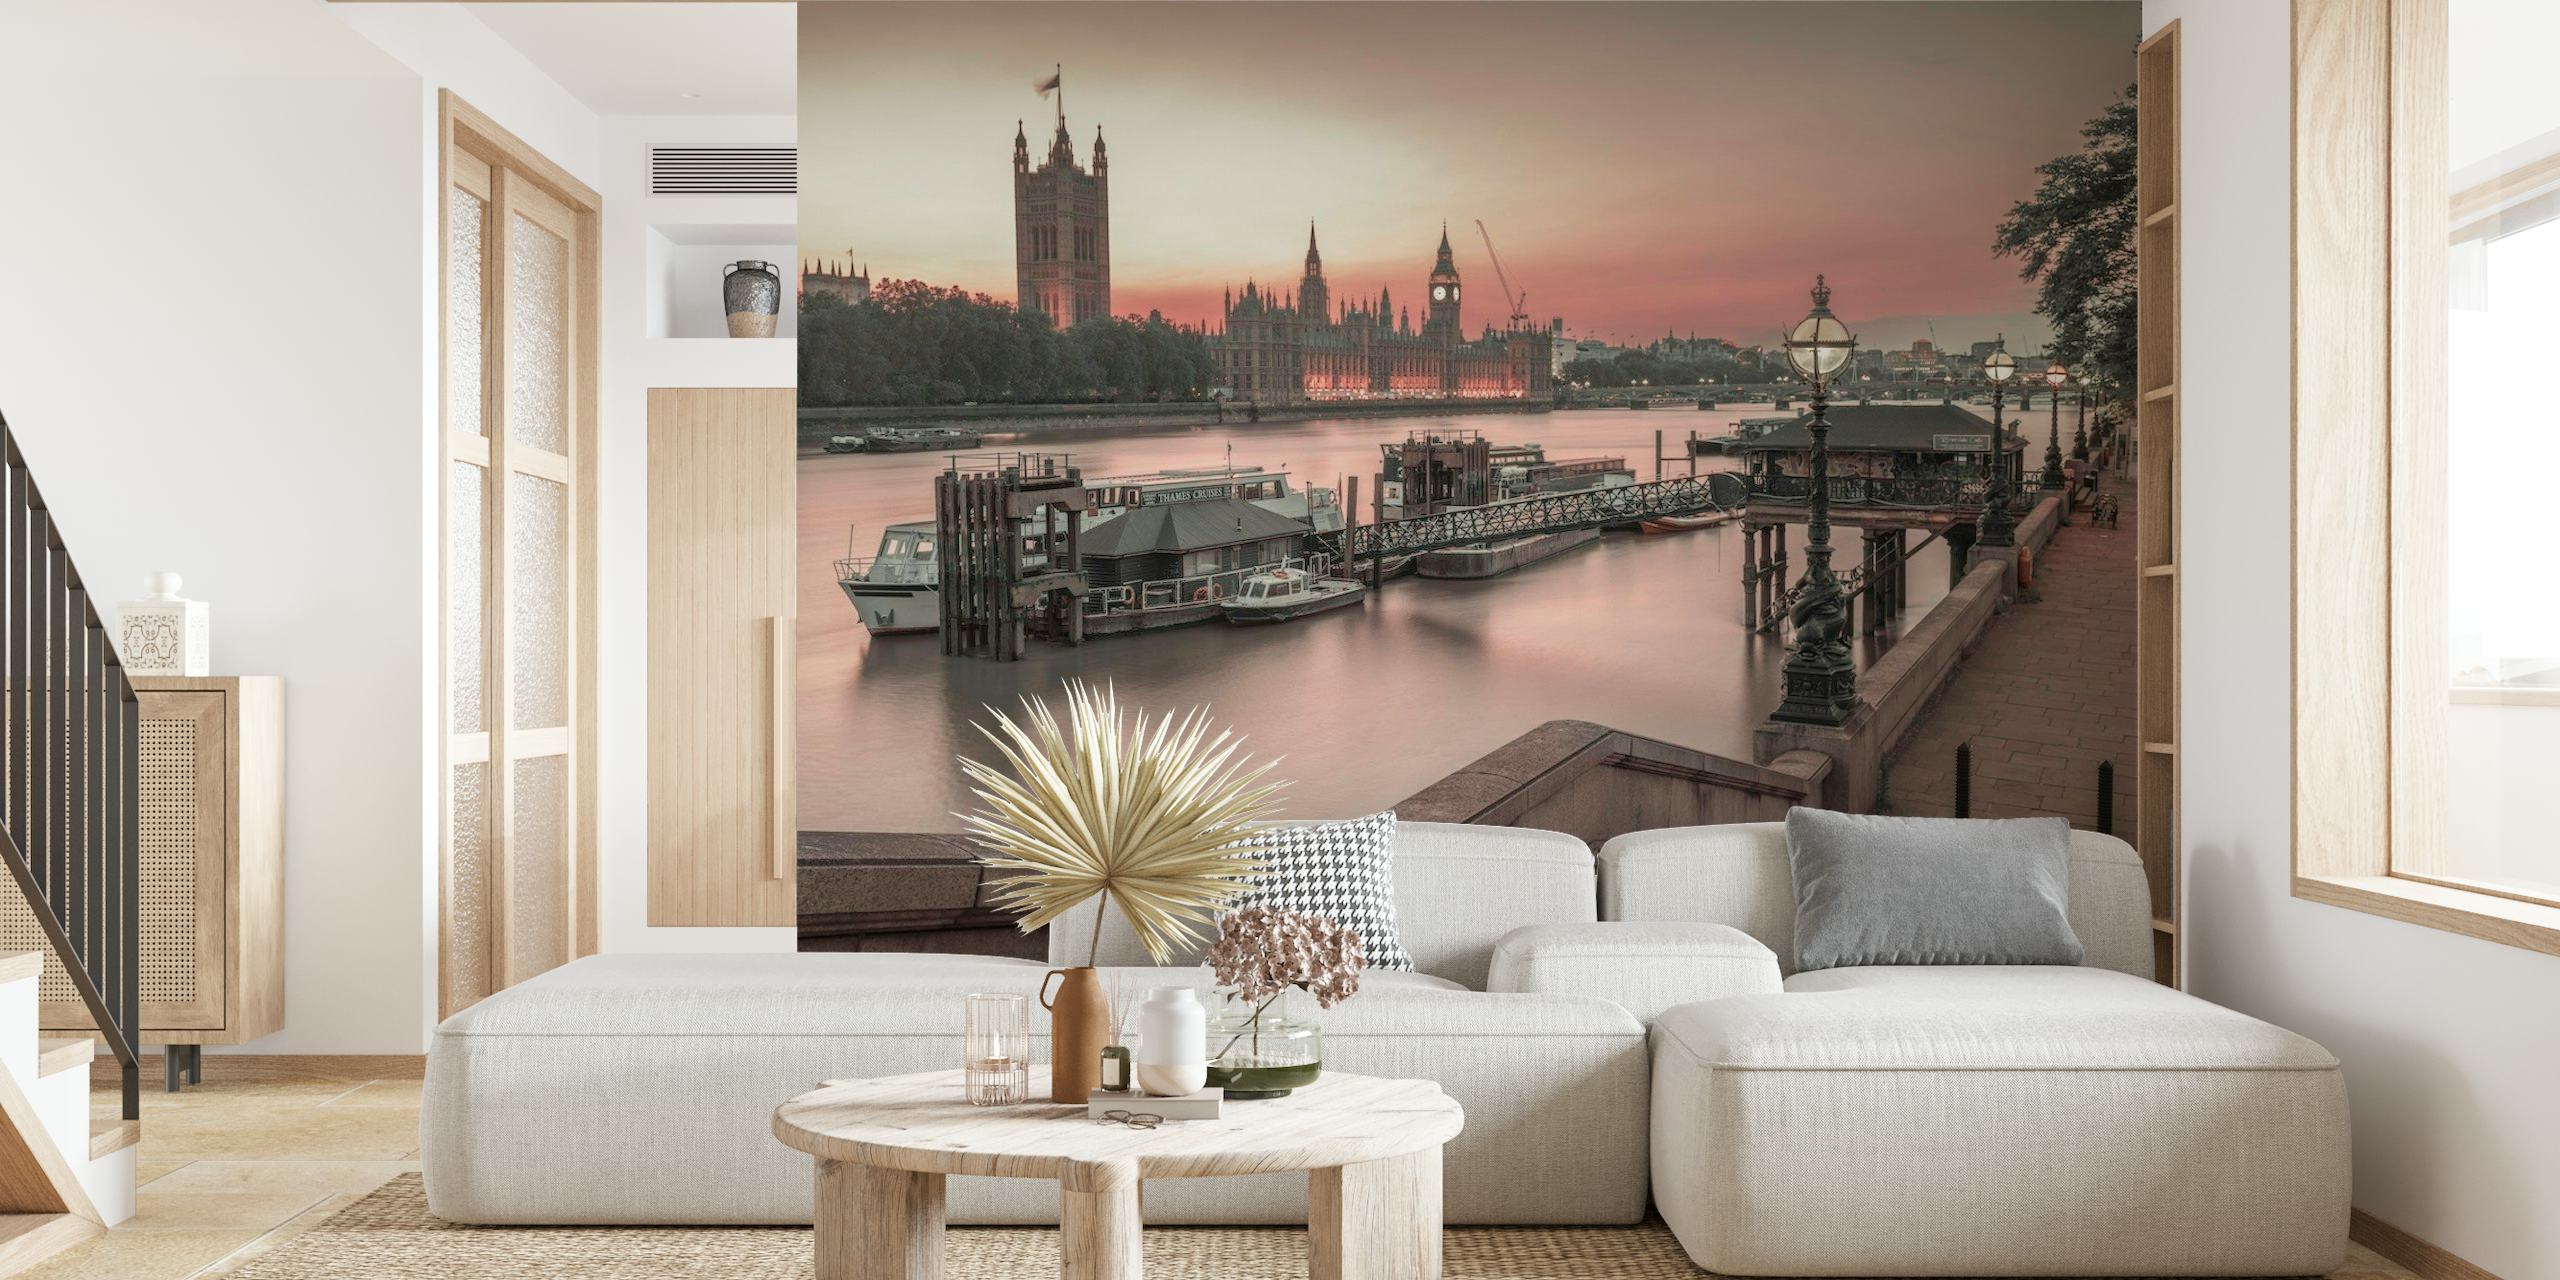 Londons skyline-vægmaleri med Houses of Parliament og Big Ben i skumringen